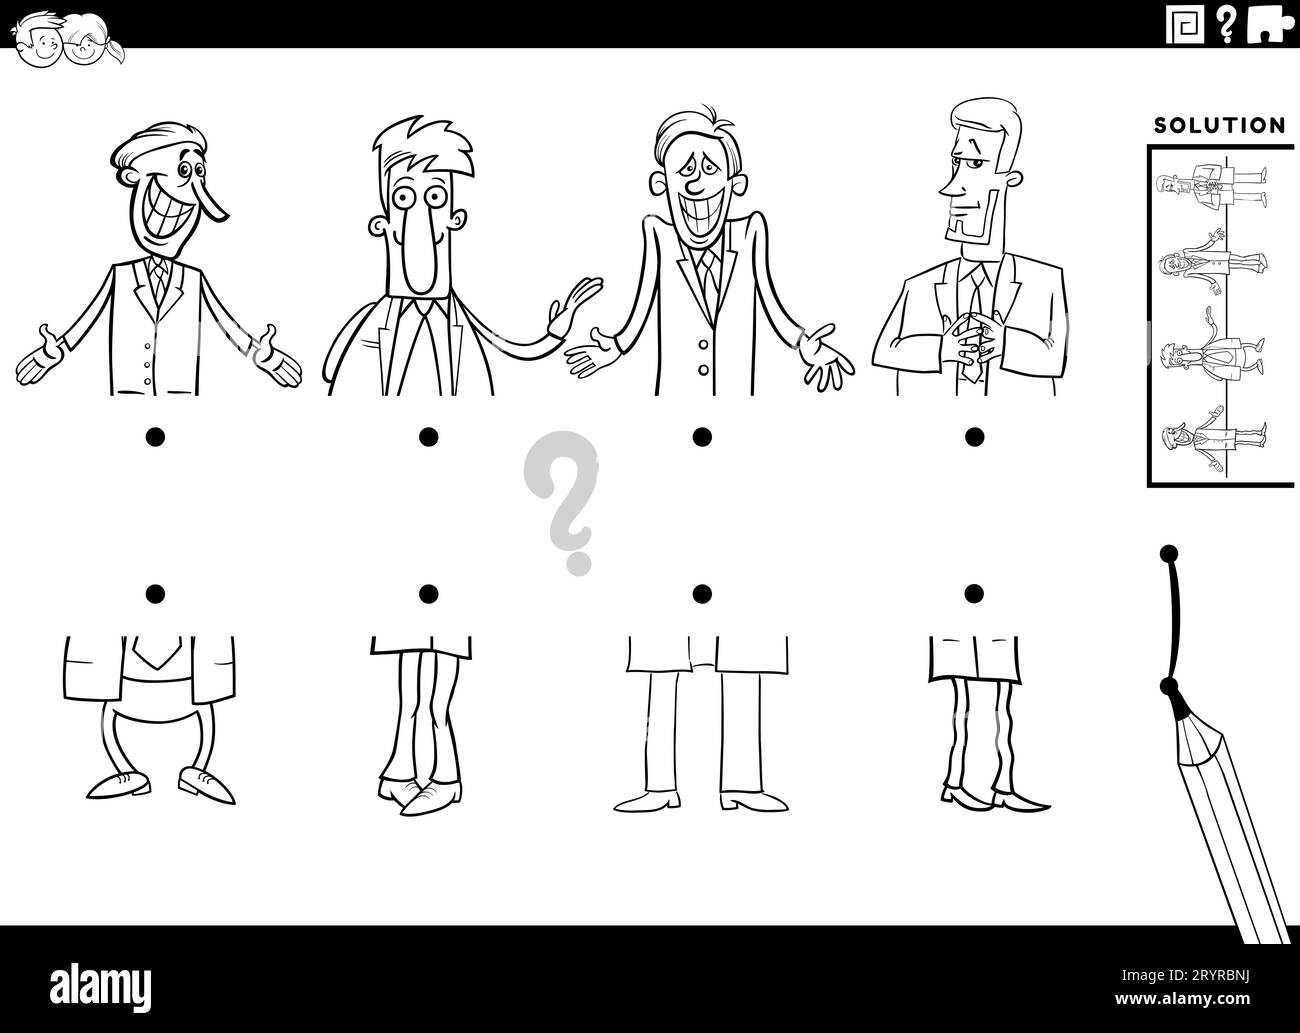 Schwarz-weißer Cartoon, Darstellung eines pädagogischen Spiels, bei dem die Bildhälften mit den Malseiten der lustigen Männer oder Geschäftsmänner übereinstimmen Stockfoto